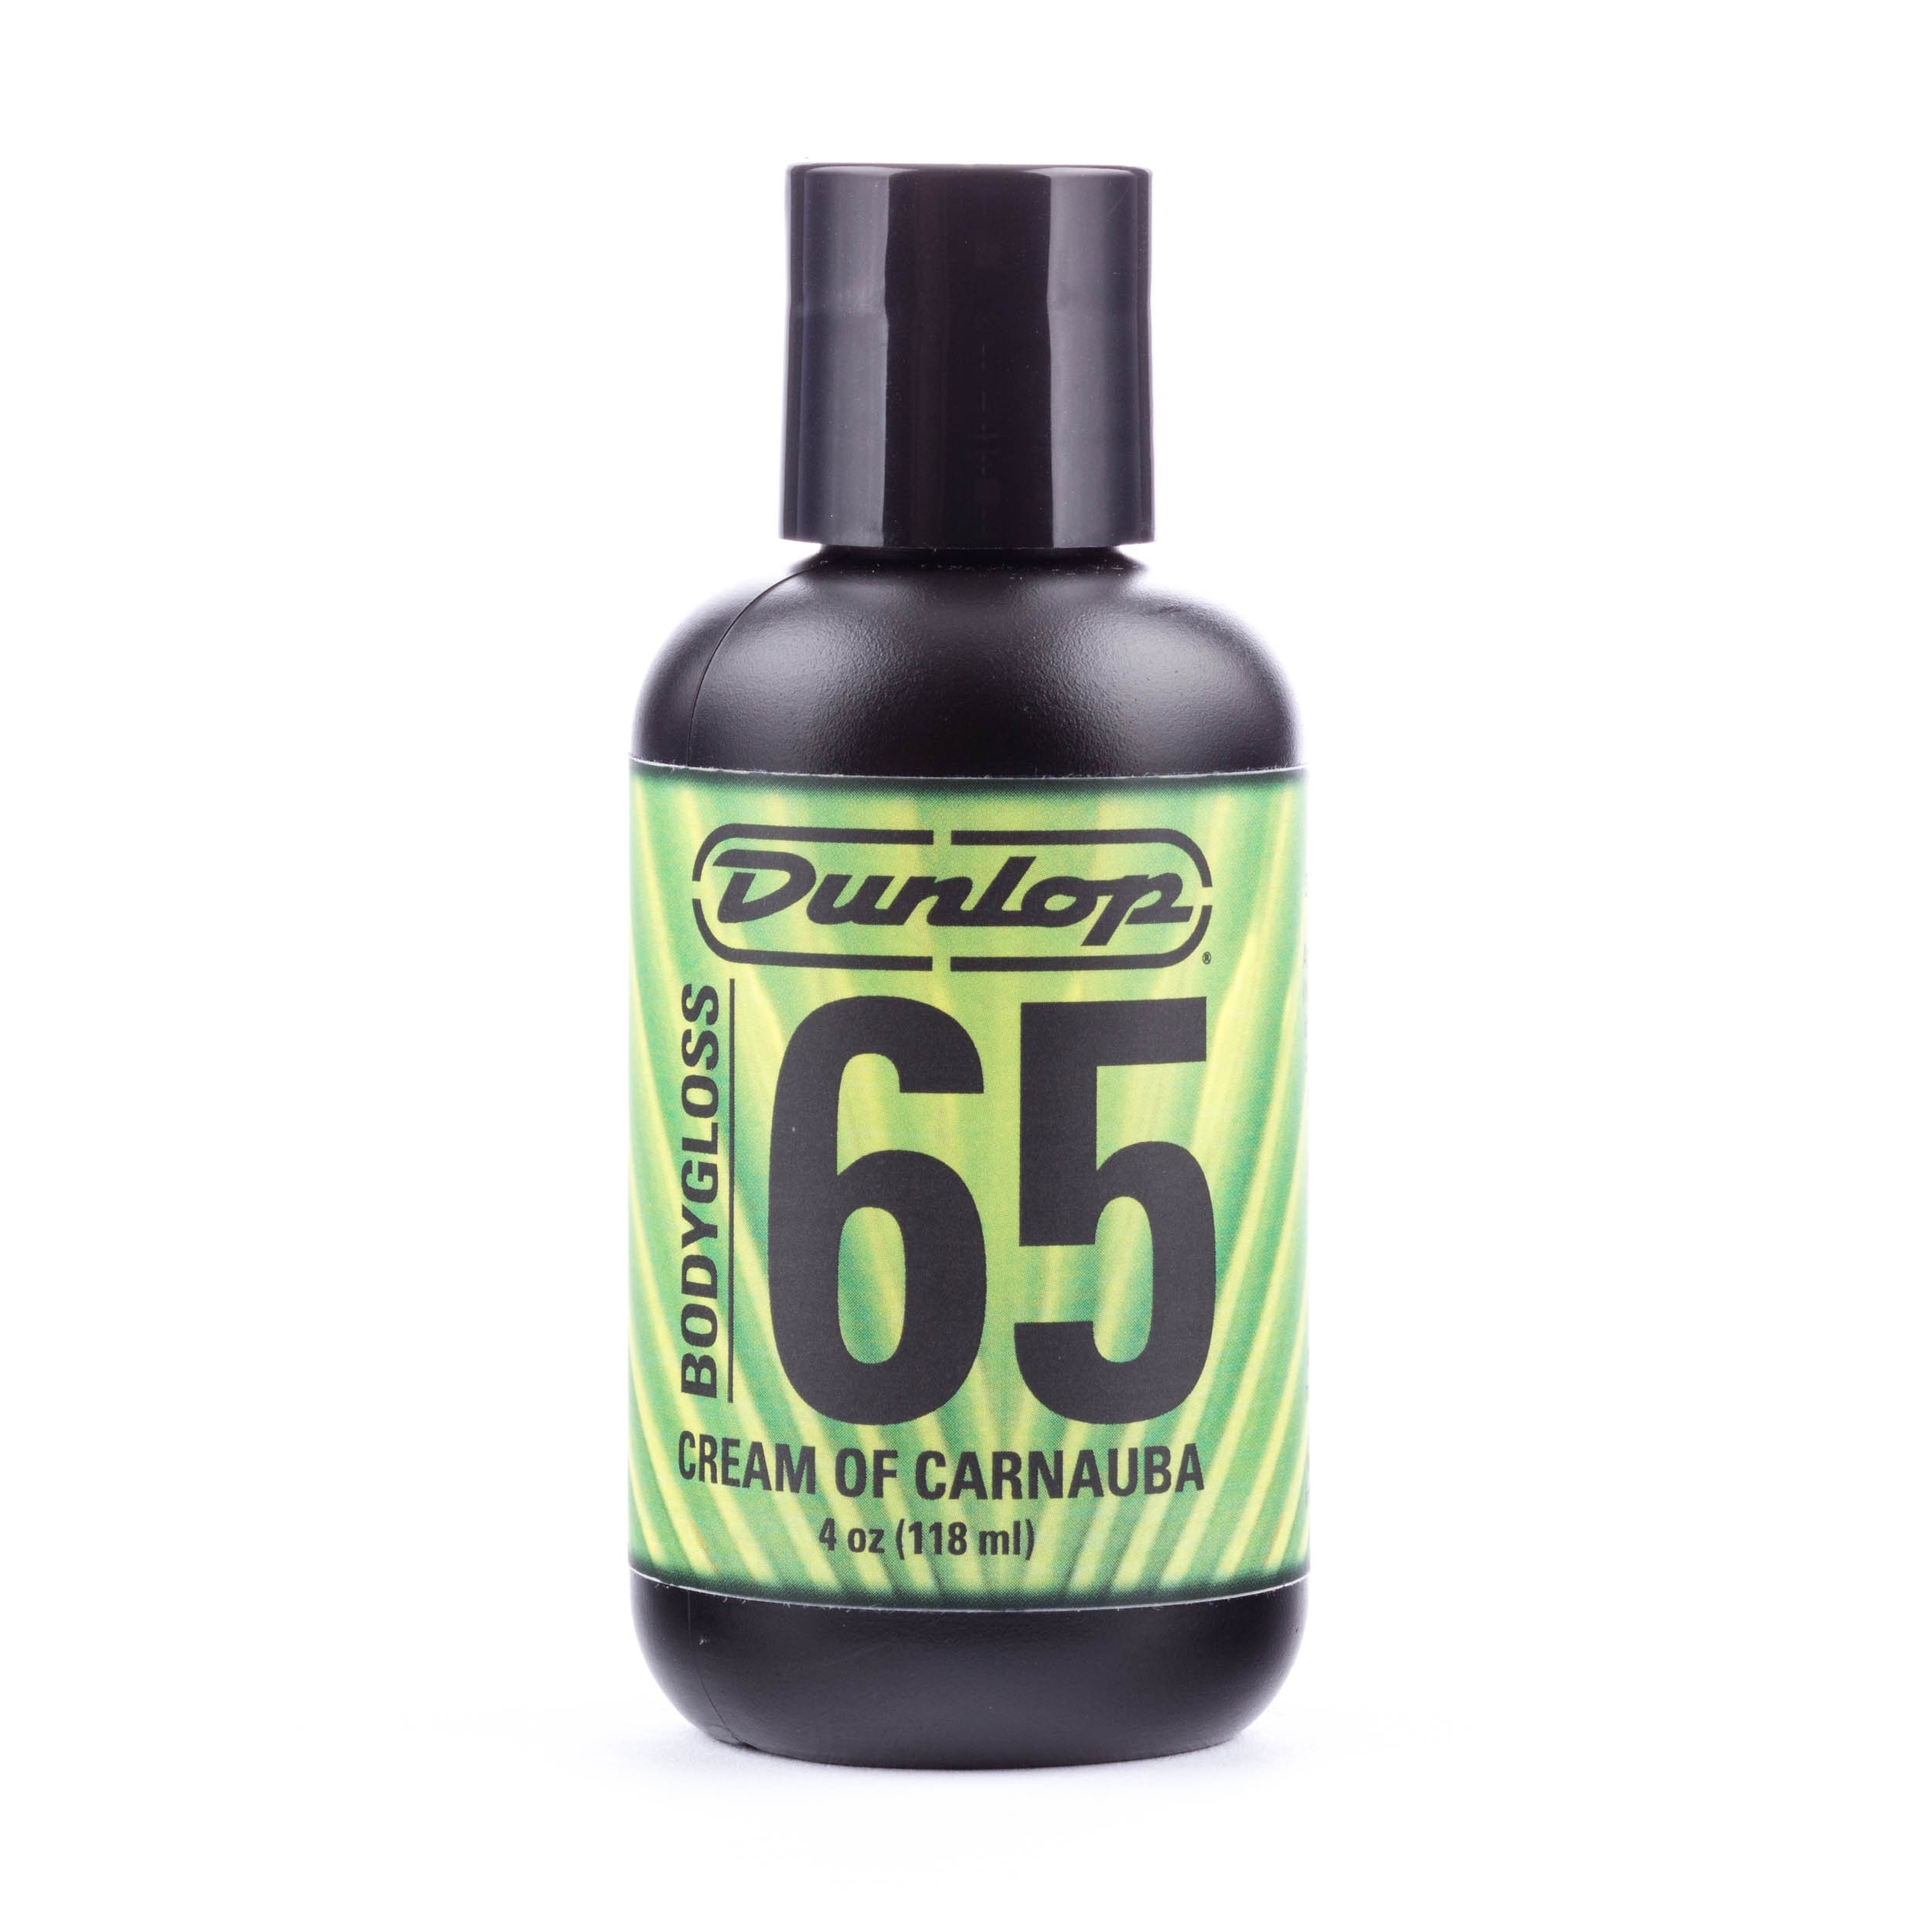 Dunlop Carnauba Wax Body gloss 6574